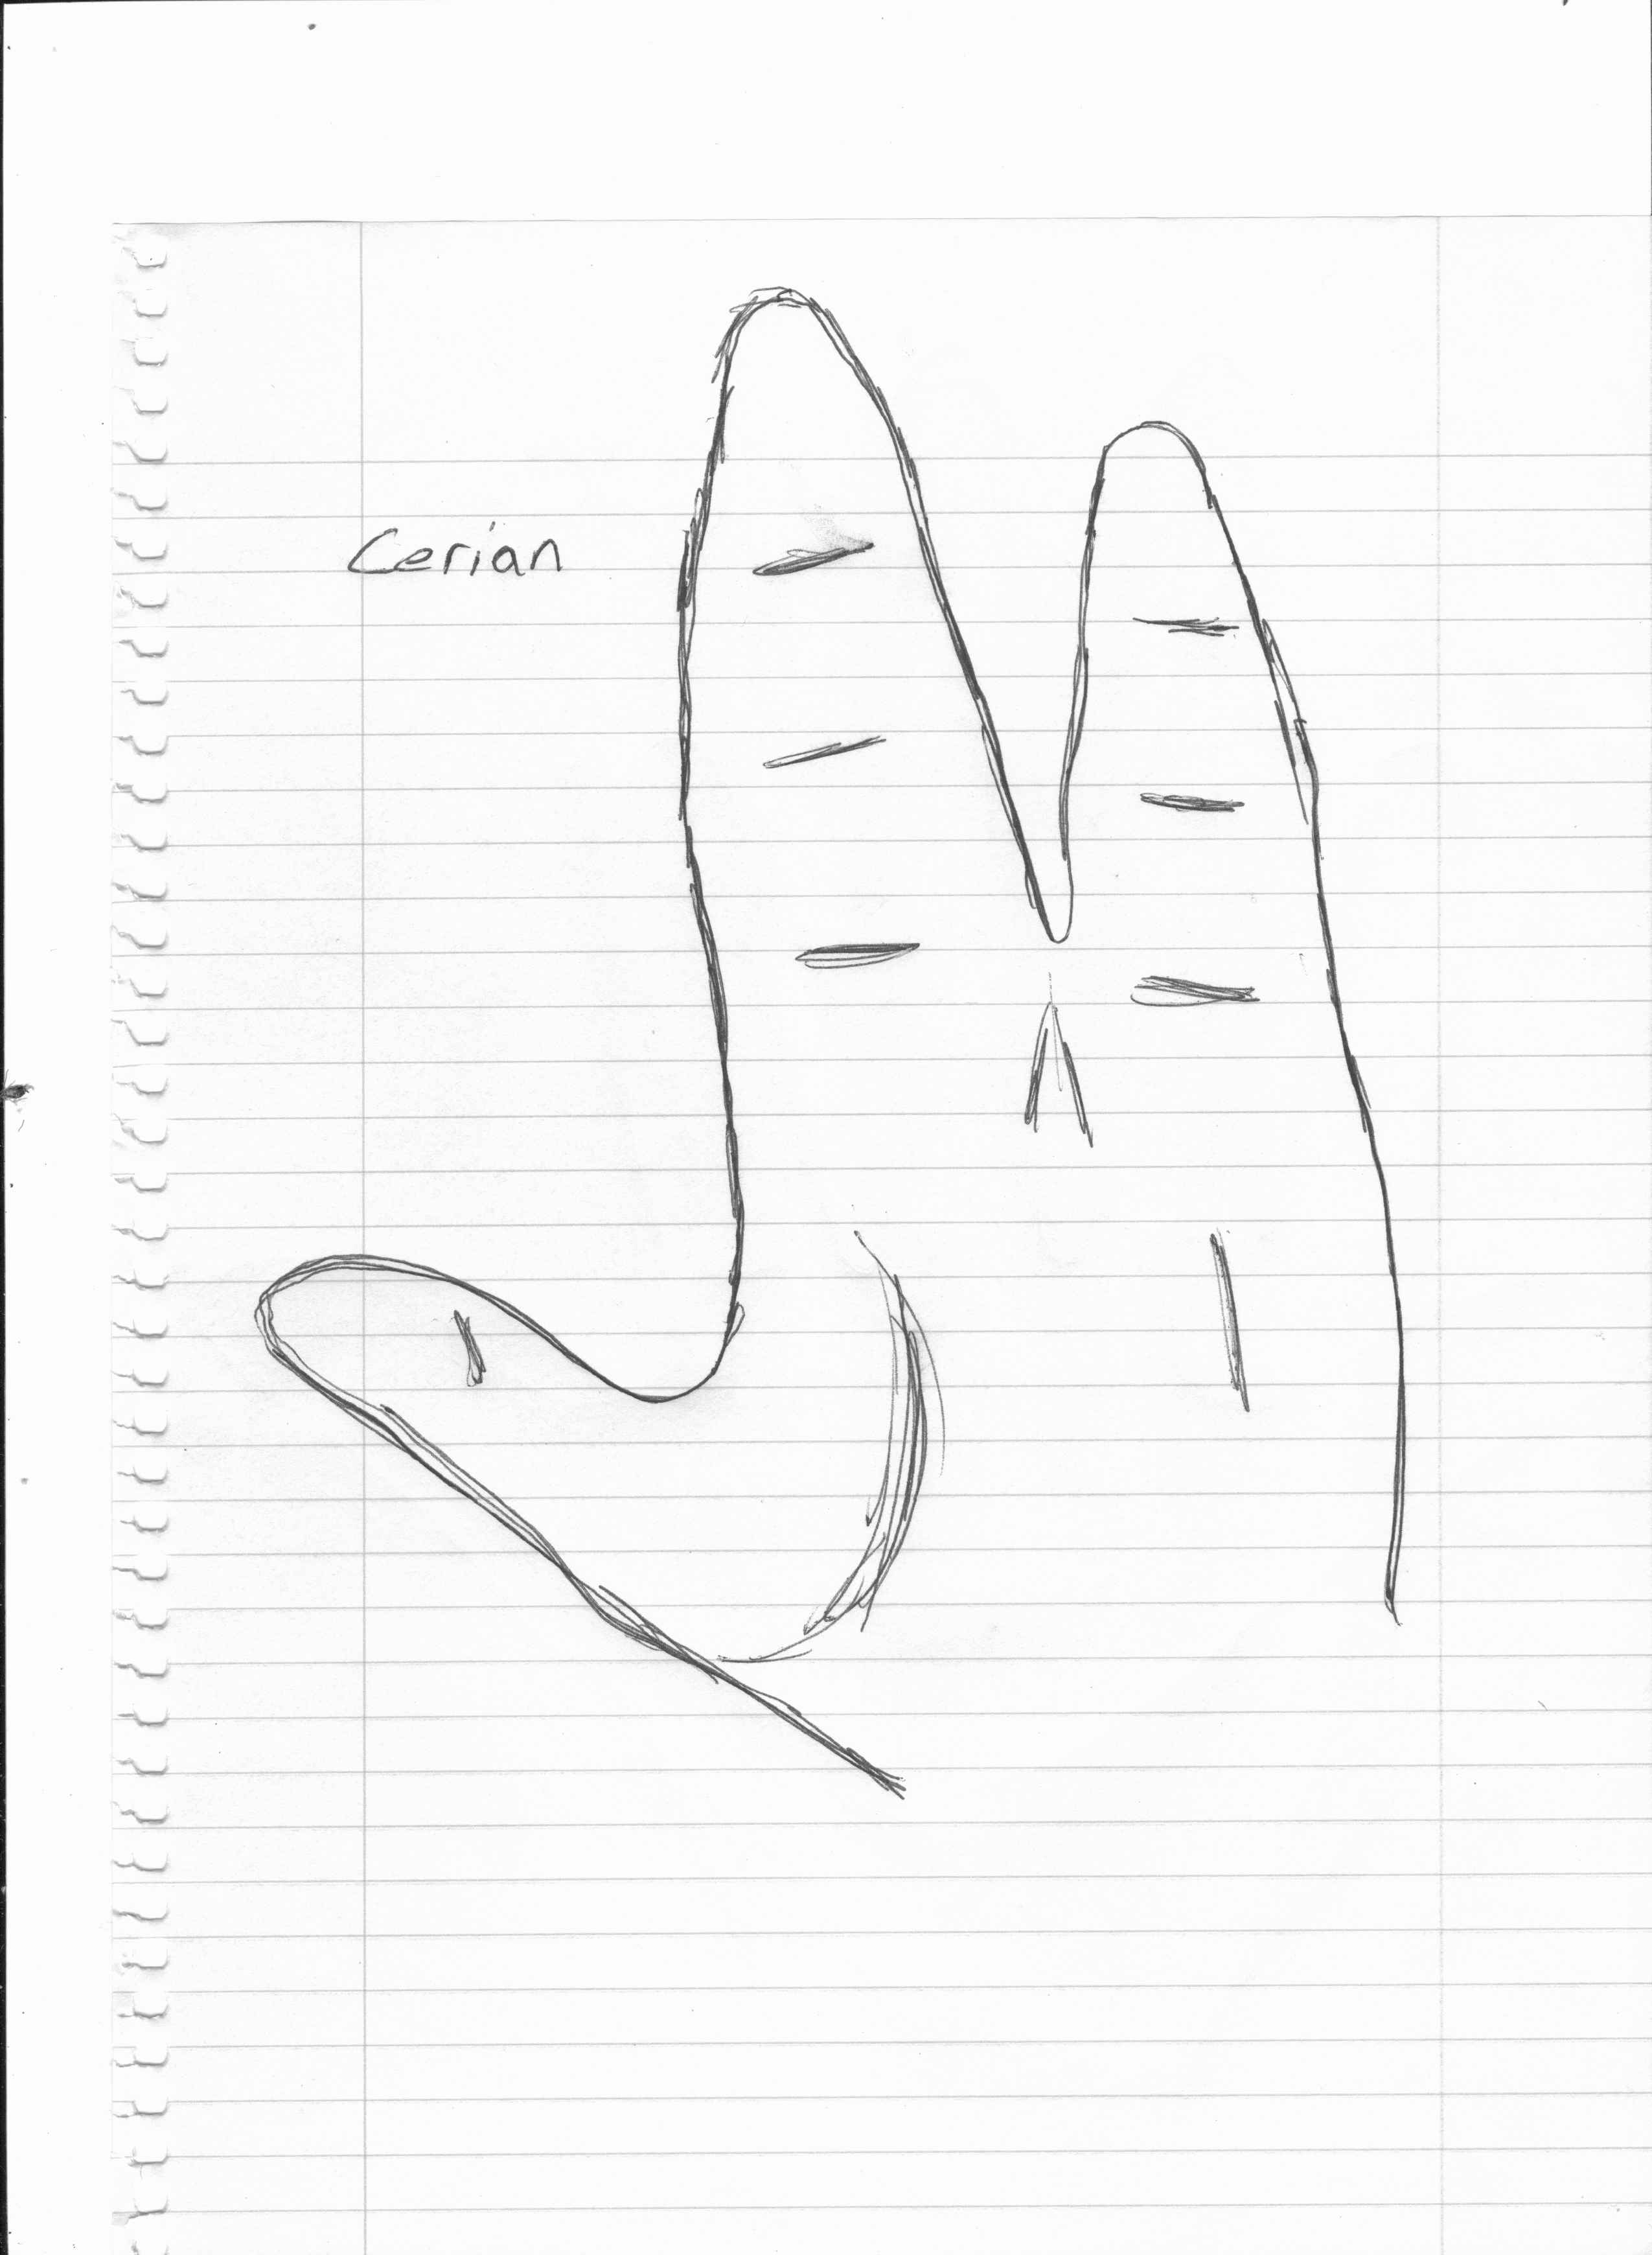 Cerian Hand